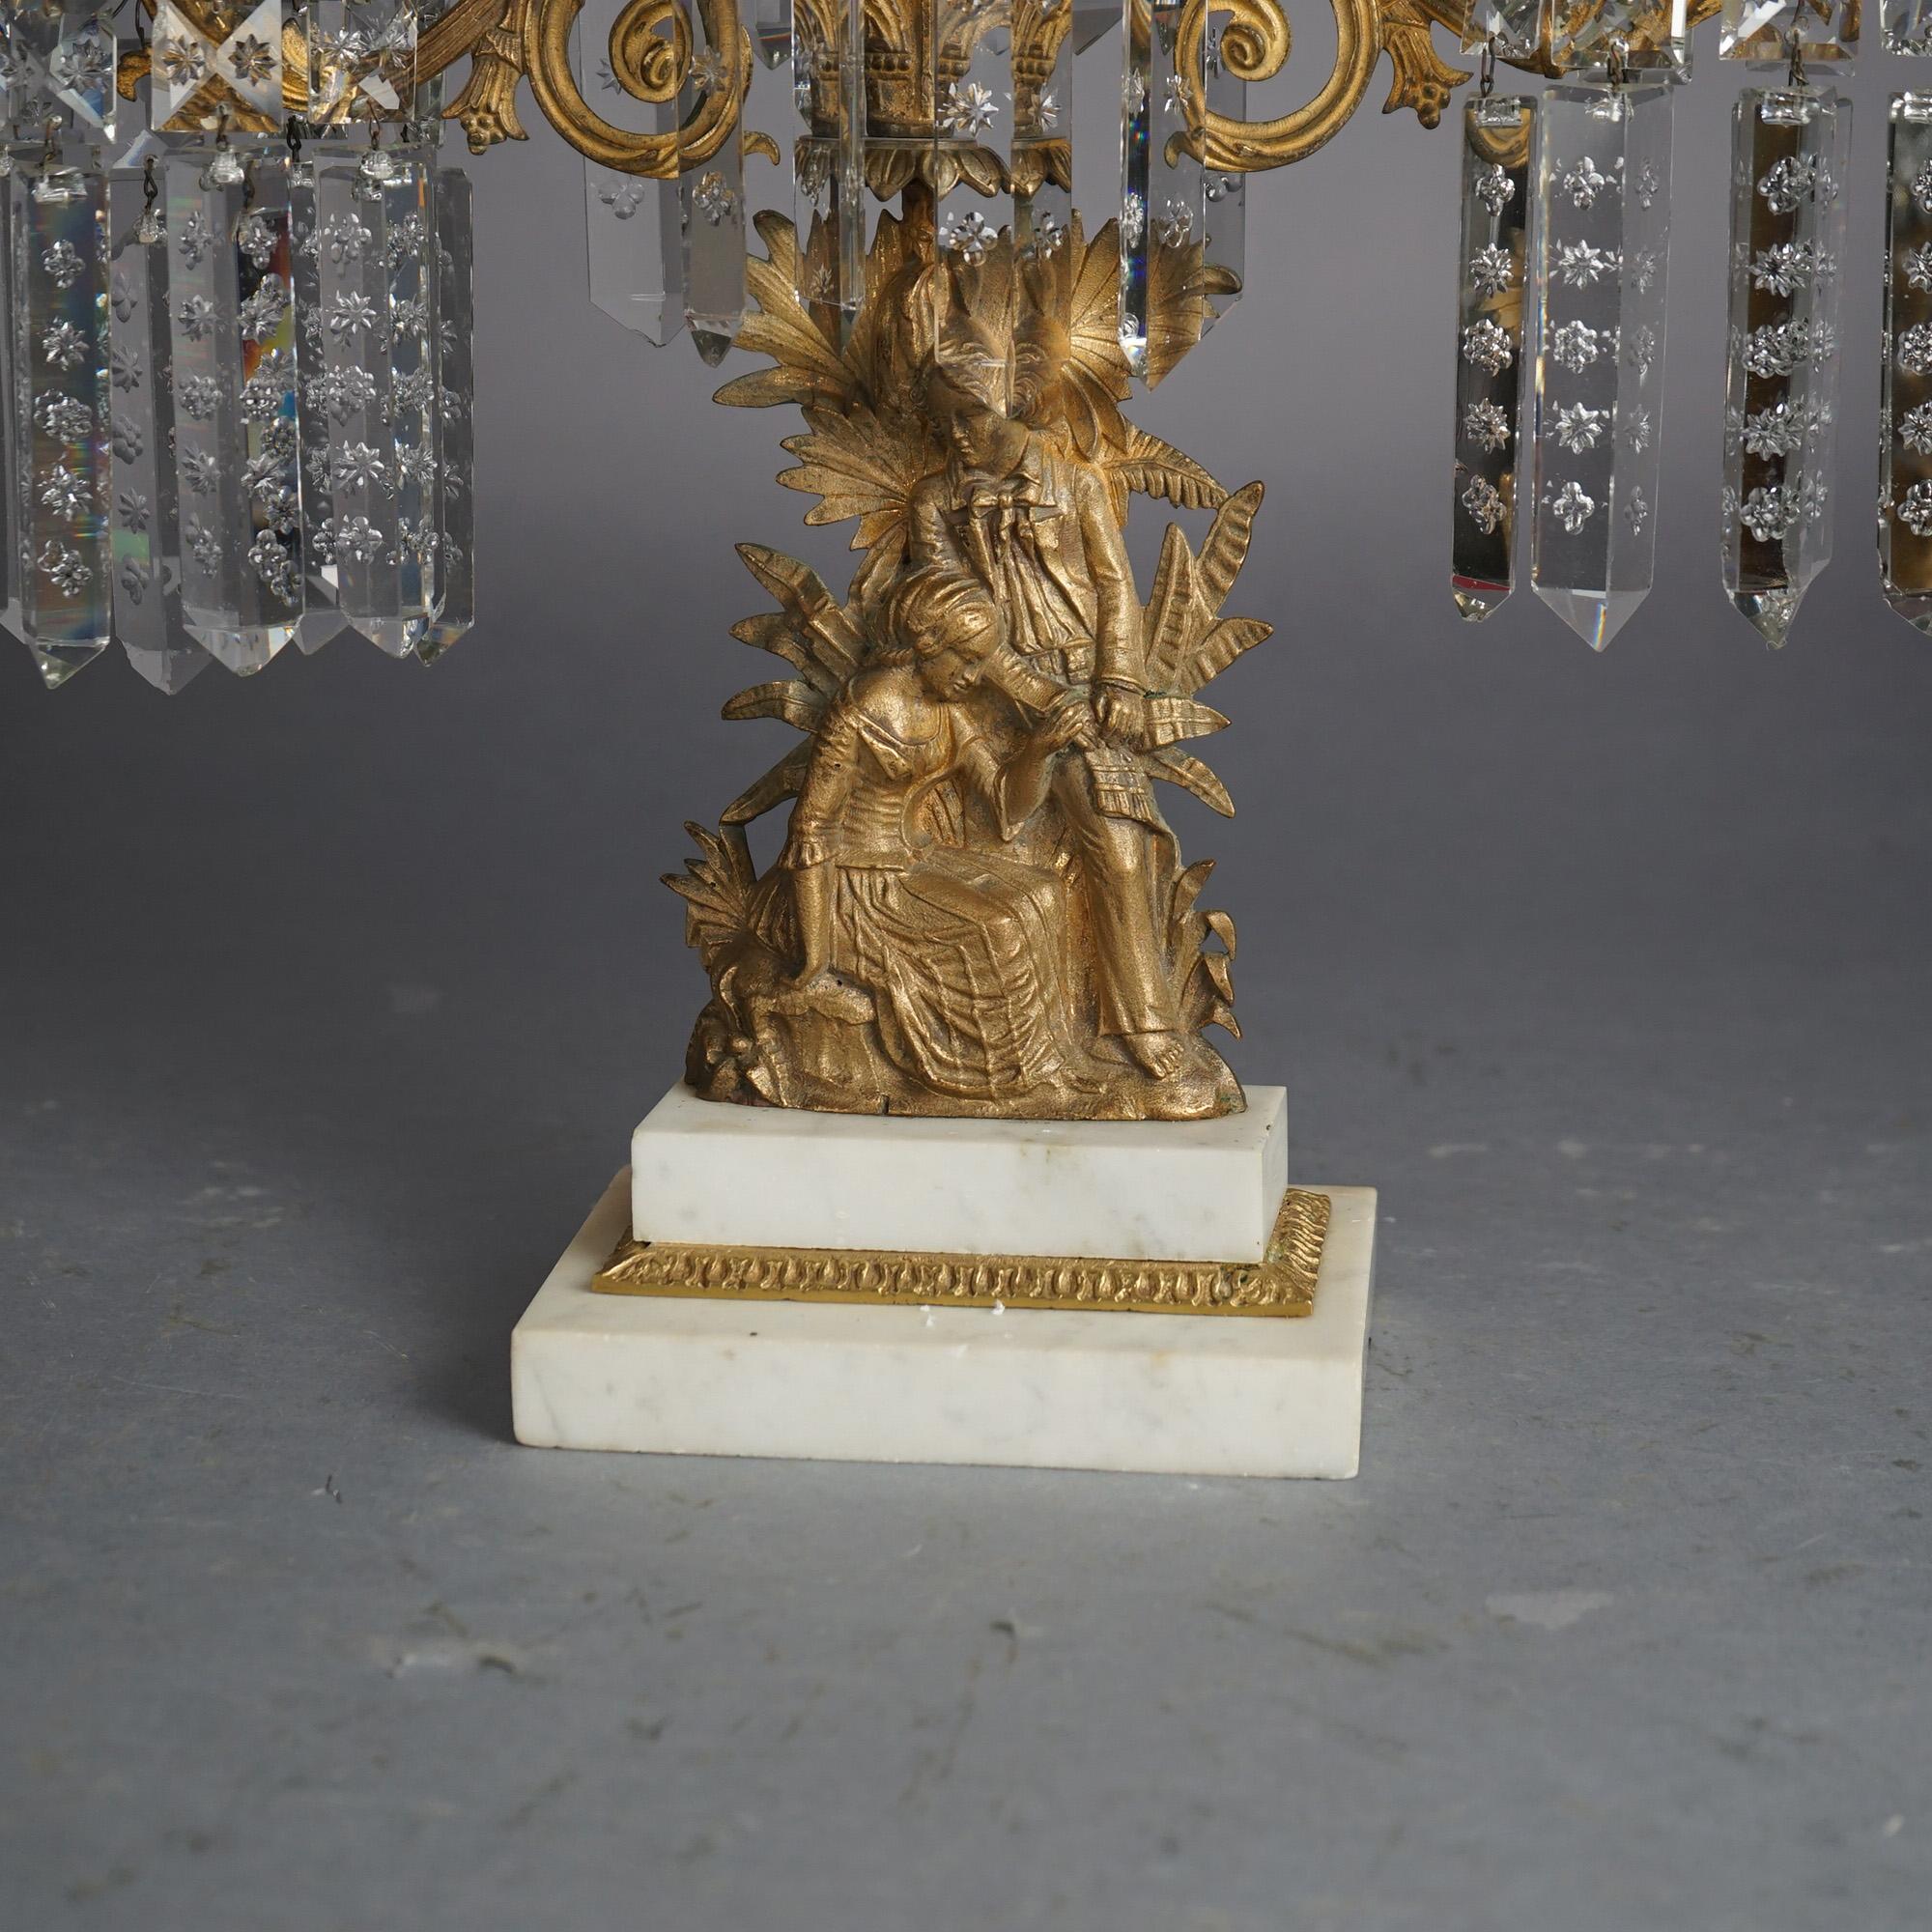 Ensemble antique de girandoles américaines offrant des montures en bronze moulé doré sous la forme d'un couple de courtisans (femme et homme anglo-indien) dans un décor de campagne avec des prismes de cristal suspendus et des bases en marbre à